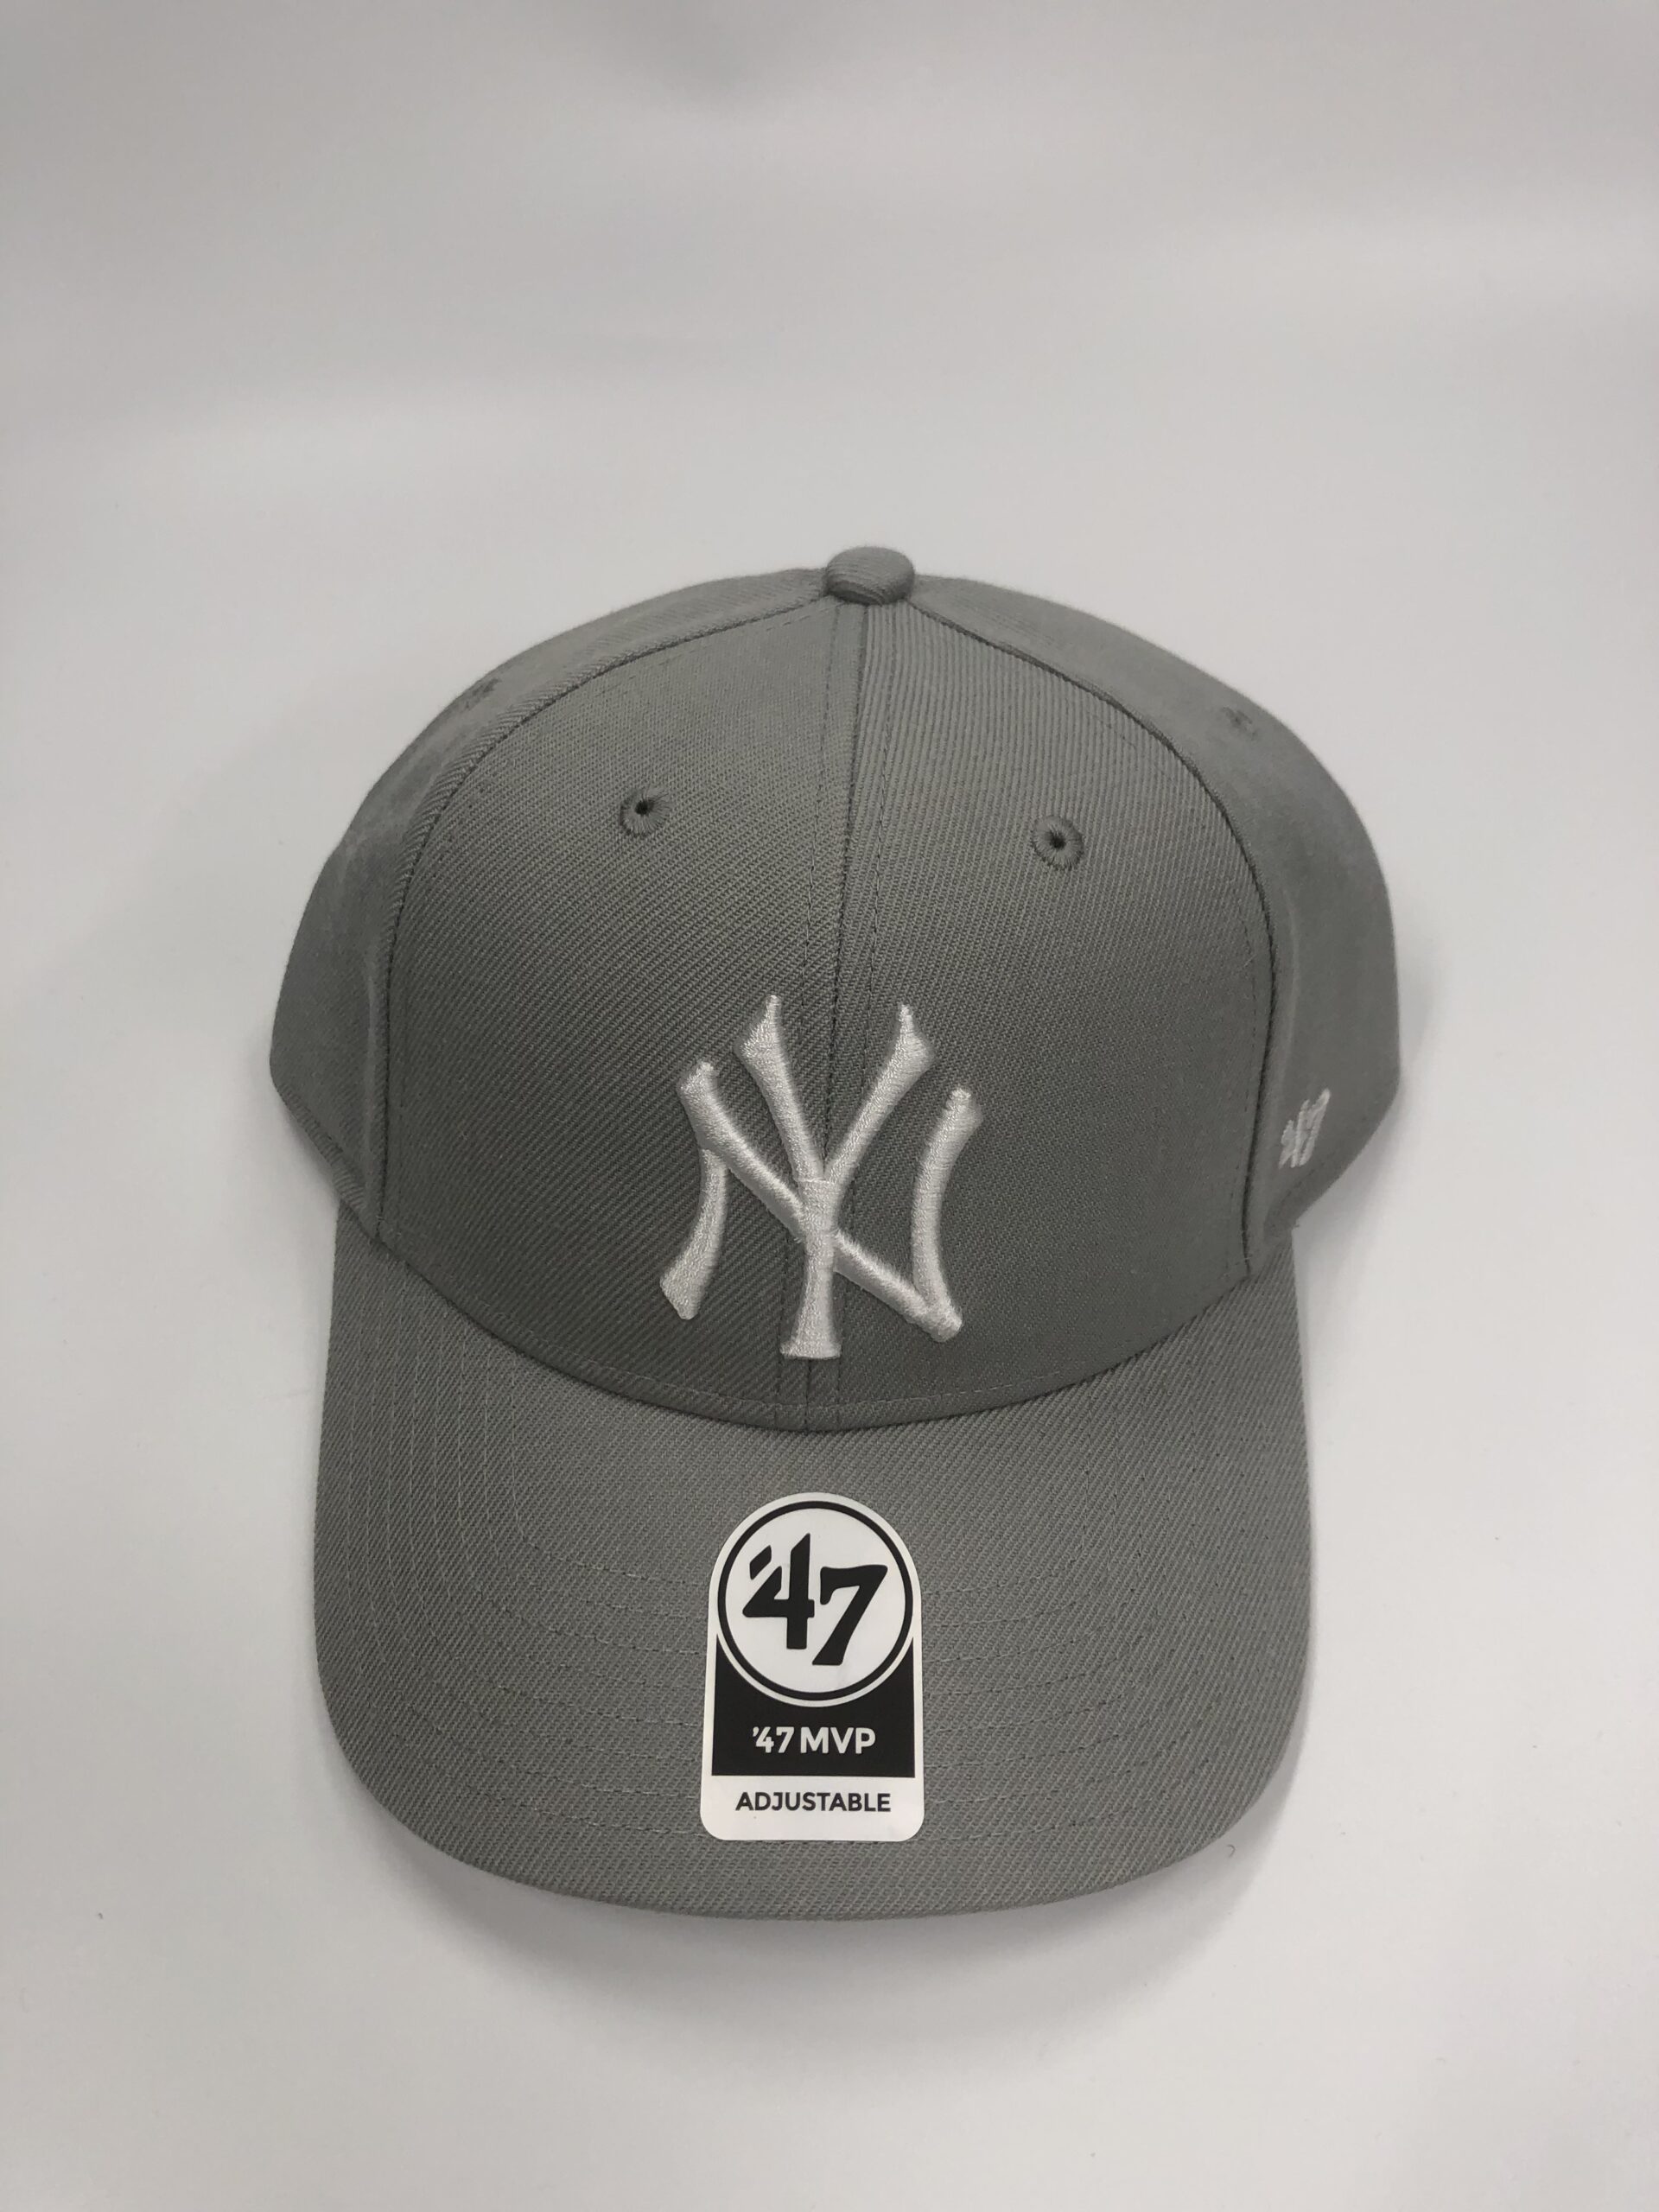 Yankees’47 MVP Gray